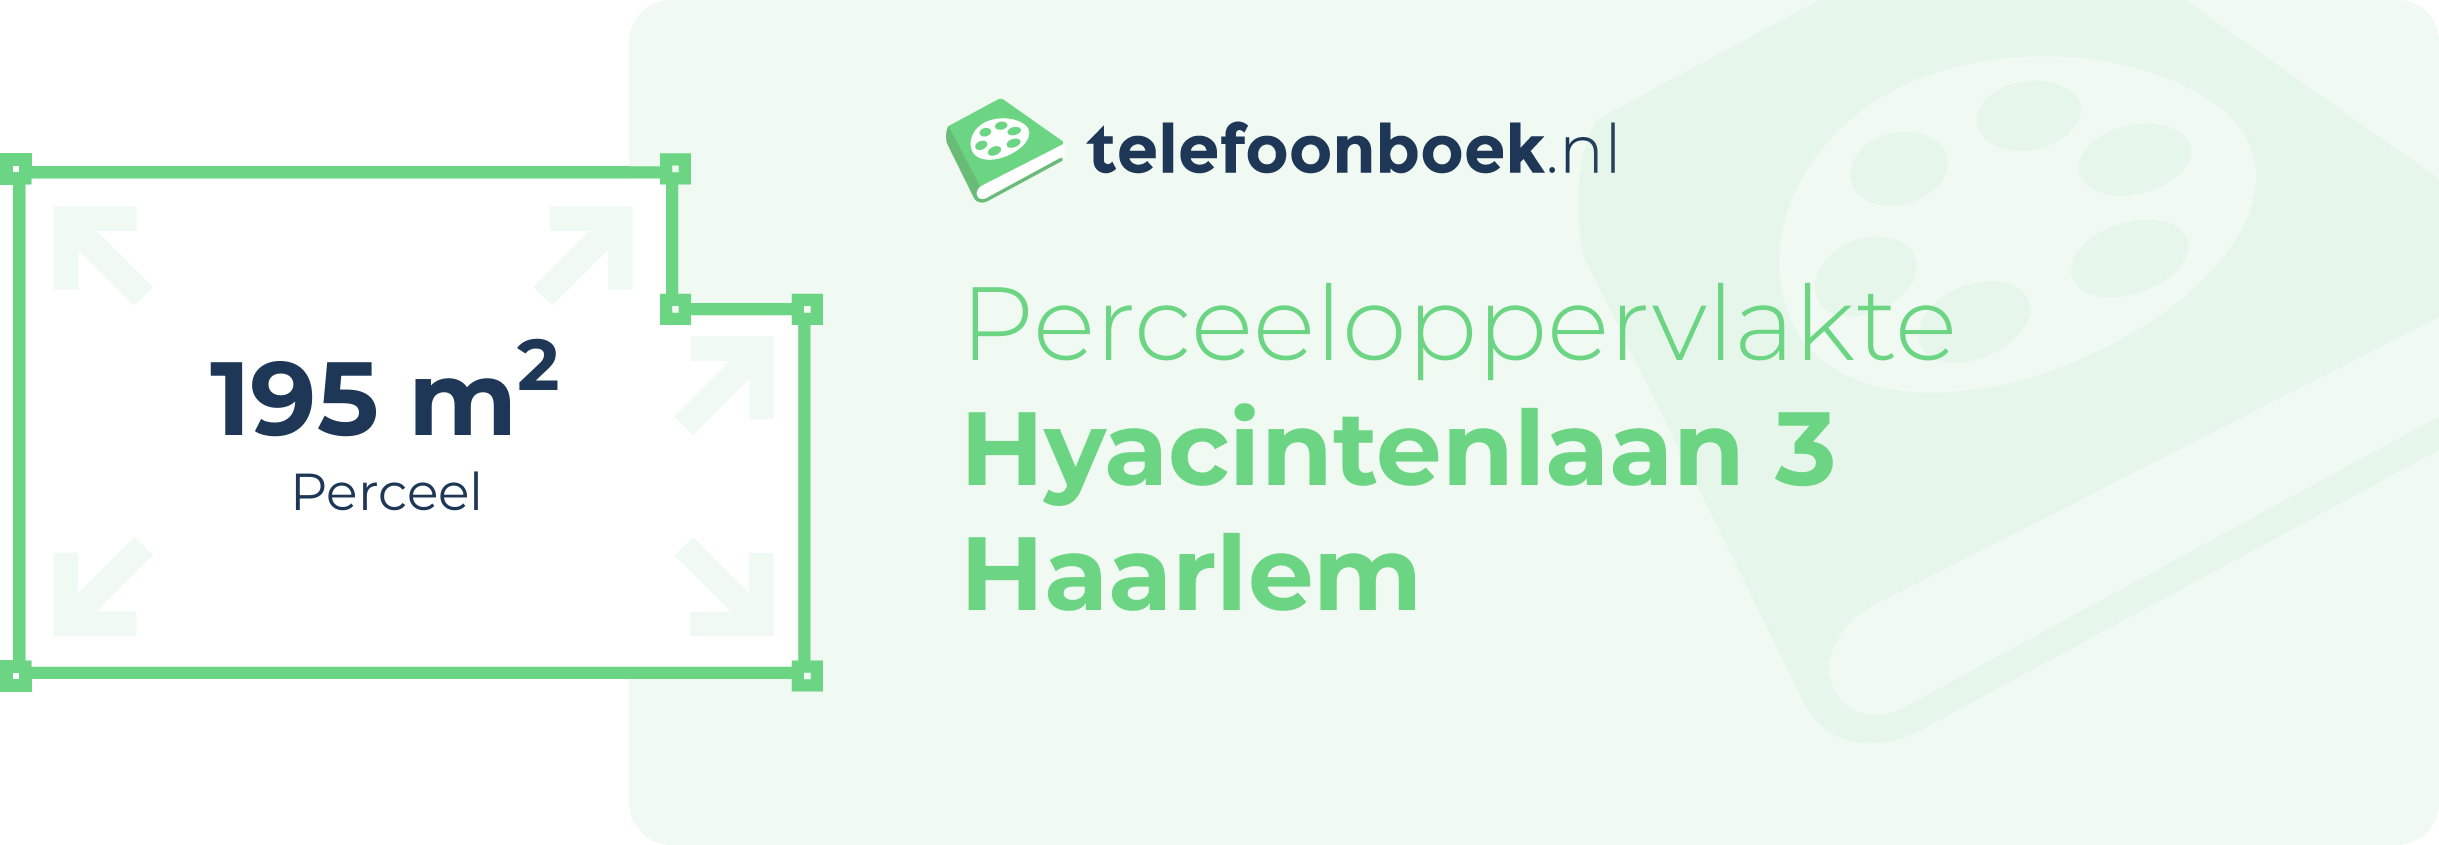 Perceeloppervlakte Hyacintenlaan 3 Haarlem